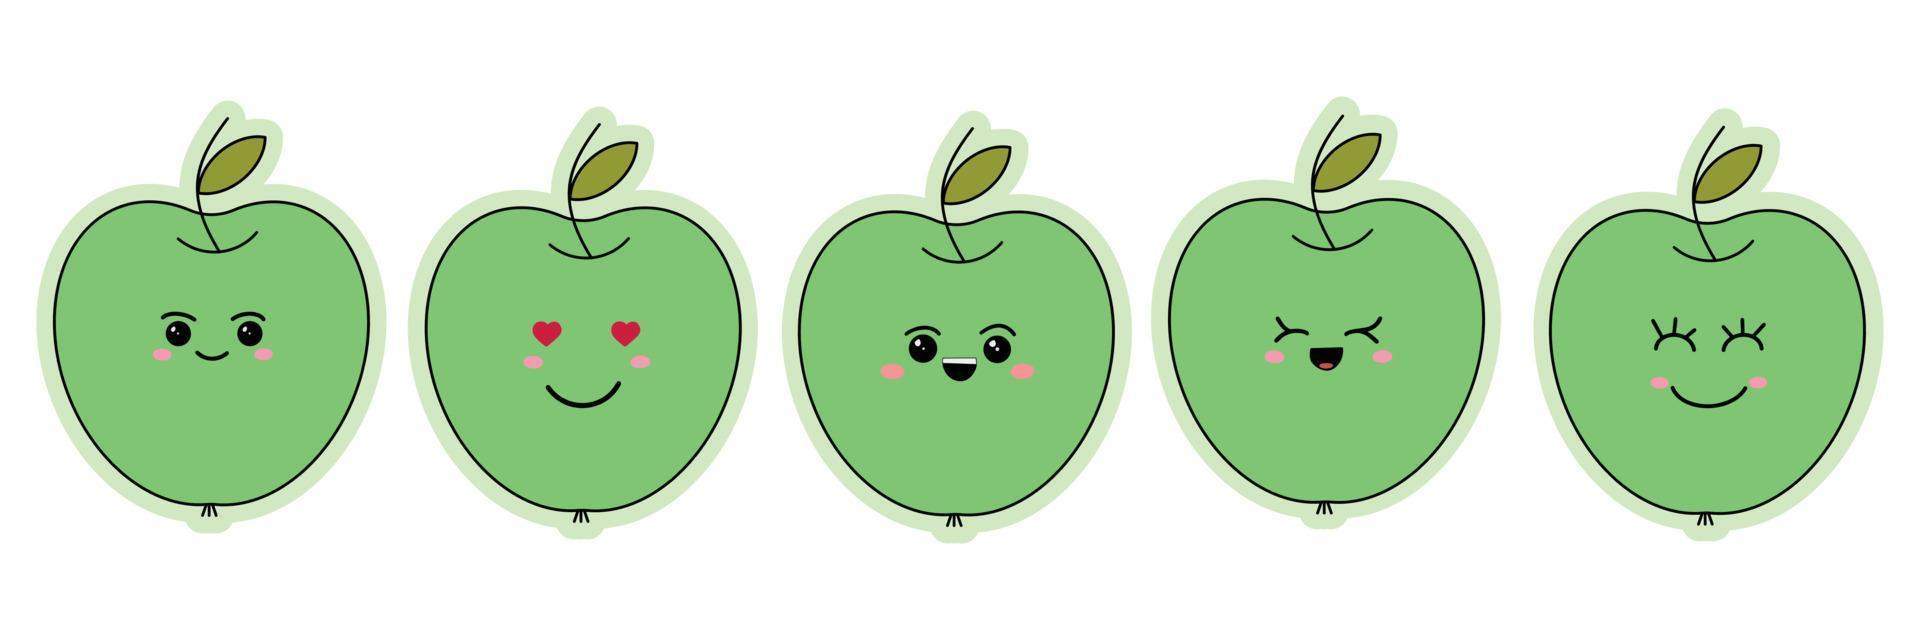 en uppsättning av klistermärken av rolig uttryckssymboler på en grön äpple. rolig tecknad serie uttryckssymboler. vektor illustration isolerat på vit bakgrund